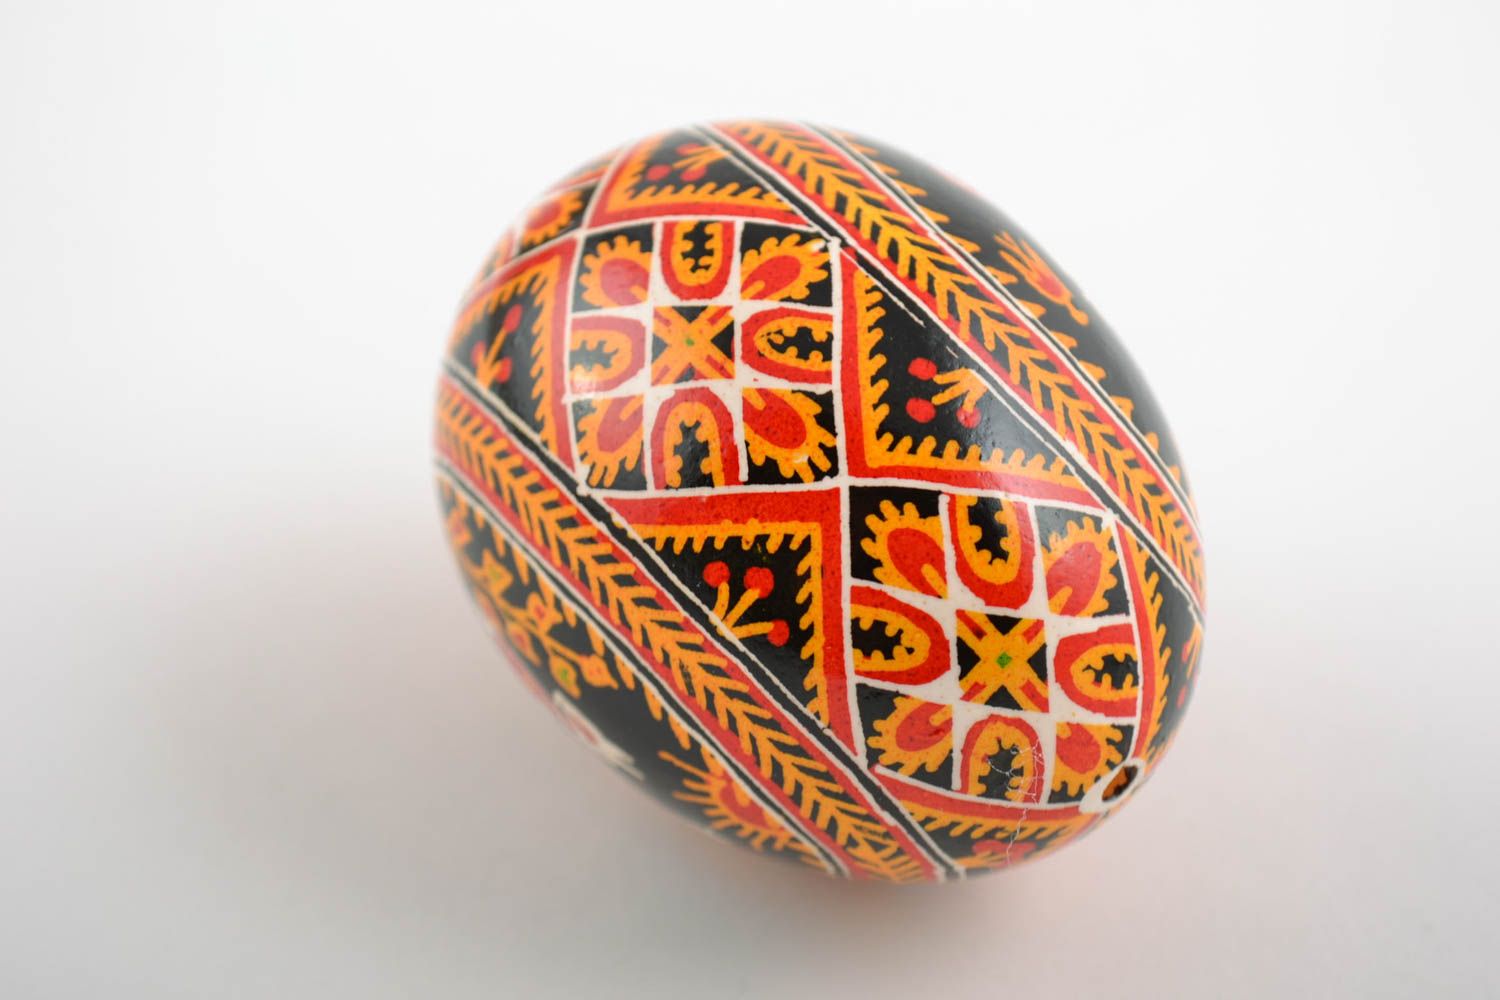 Расписное пасхальное яйцо с орнаментом подарок красивое необычное ручной работы фото 3